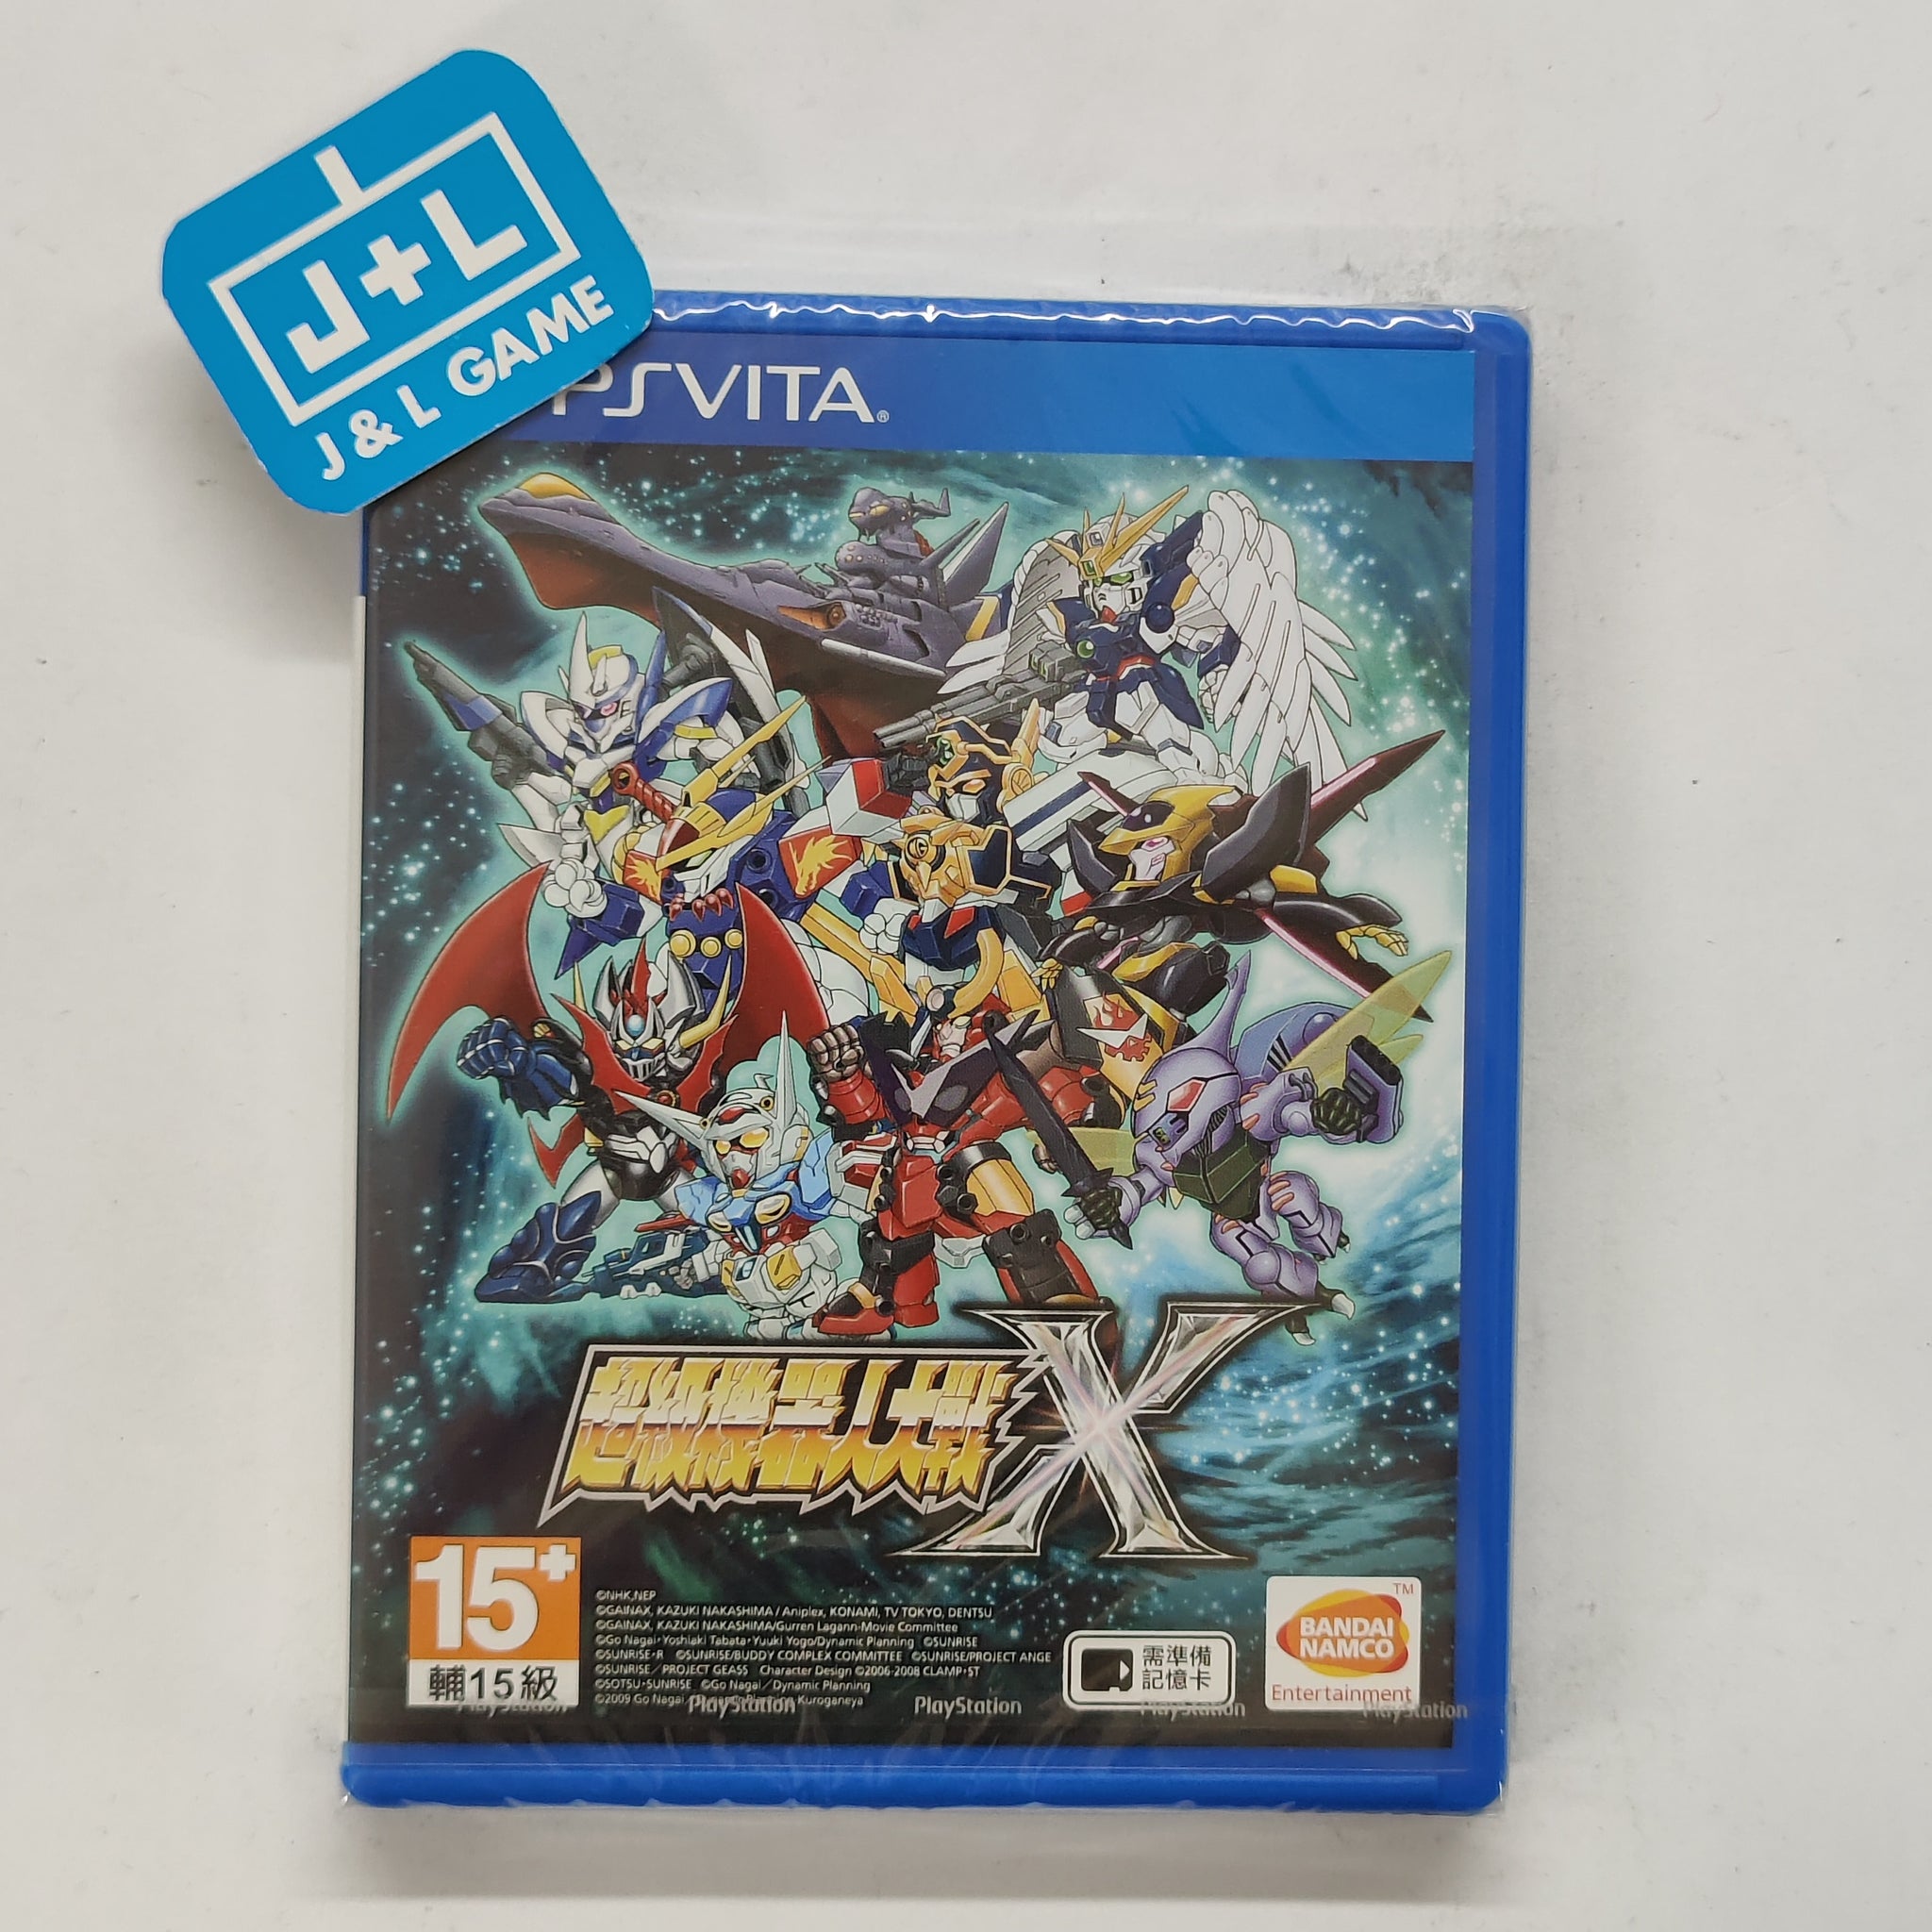 Super Robot Wars X (Chinese Sub) - (PSV) PlayStation Vita (Japanese Import) Video Games Bandai Namco Games   